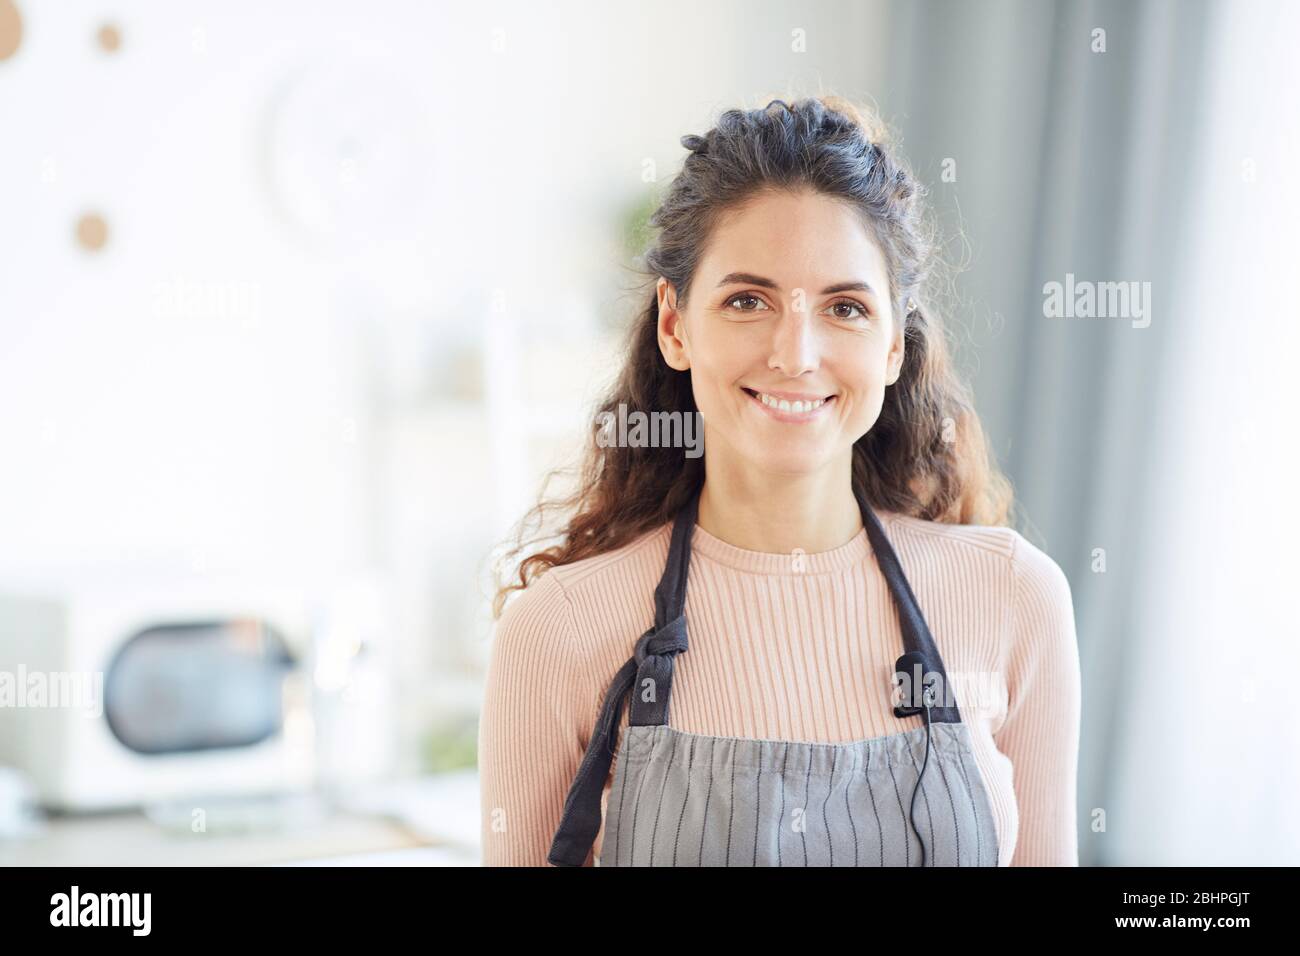 Stilvolle kaukasische Frau trägt Schürze stehend in der Küche Blick auf Kamera lächelnd, horizontale Brust nach oben geschossen Stockfoto